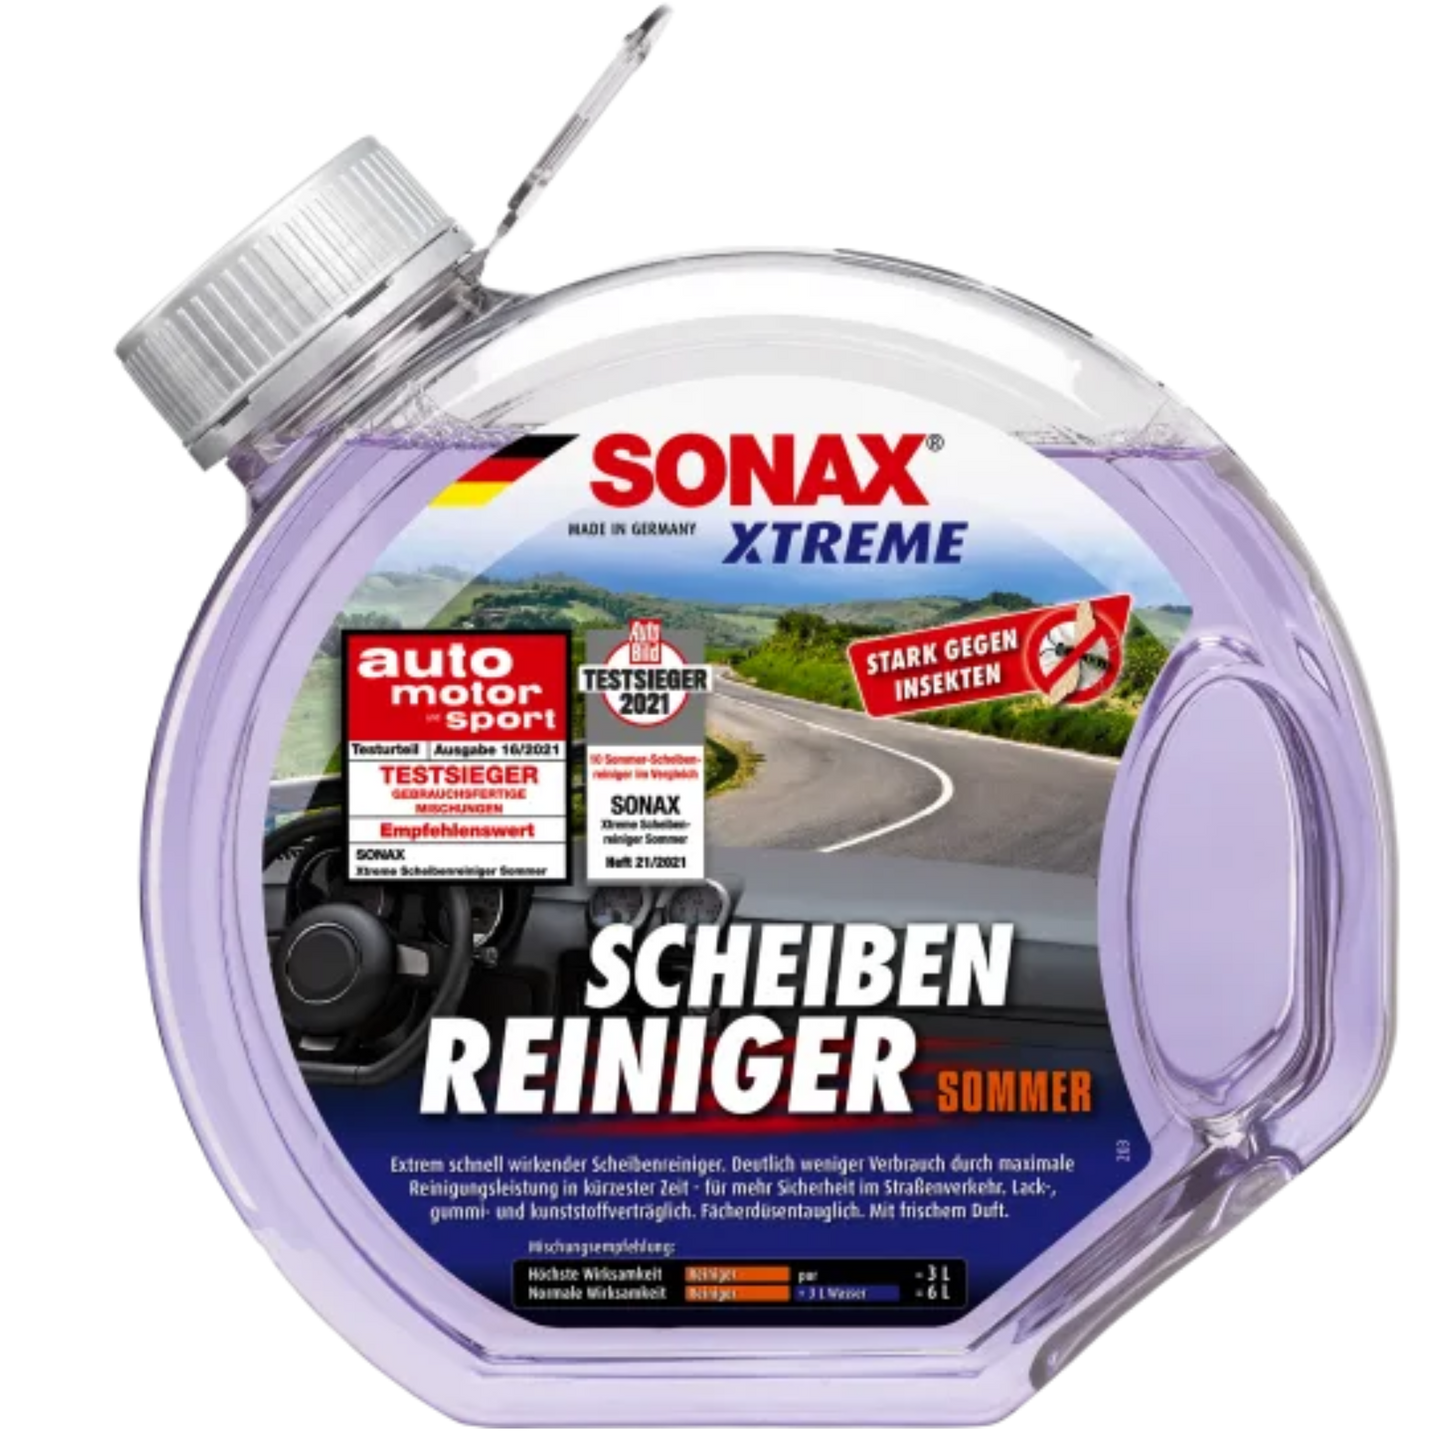 SONAX XTREME Scheibenreiniger Sommer gebrauchsfertig - 3l